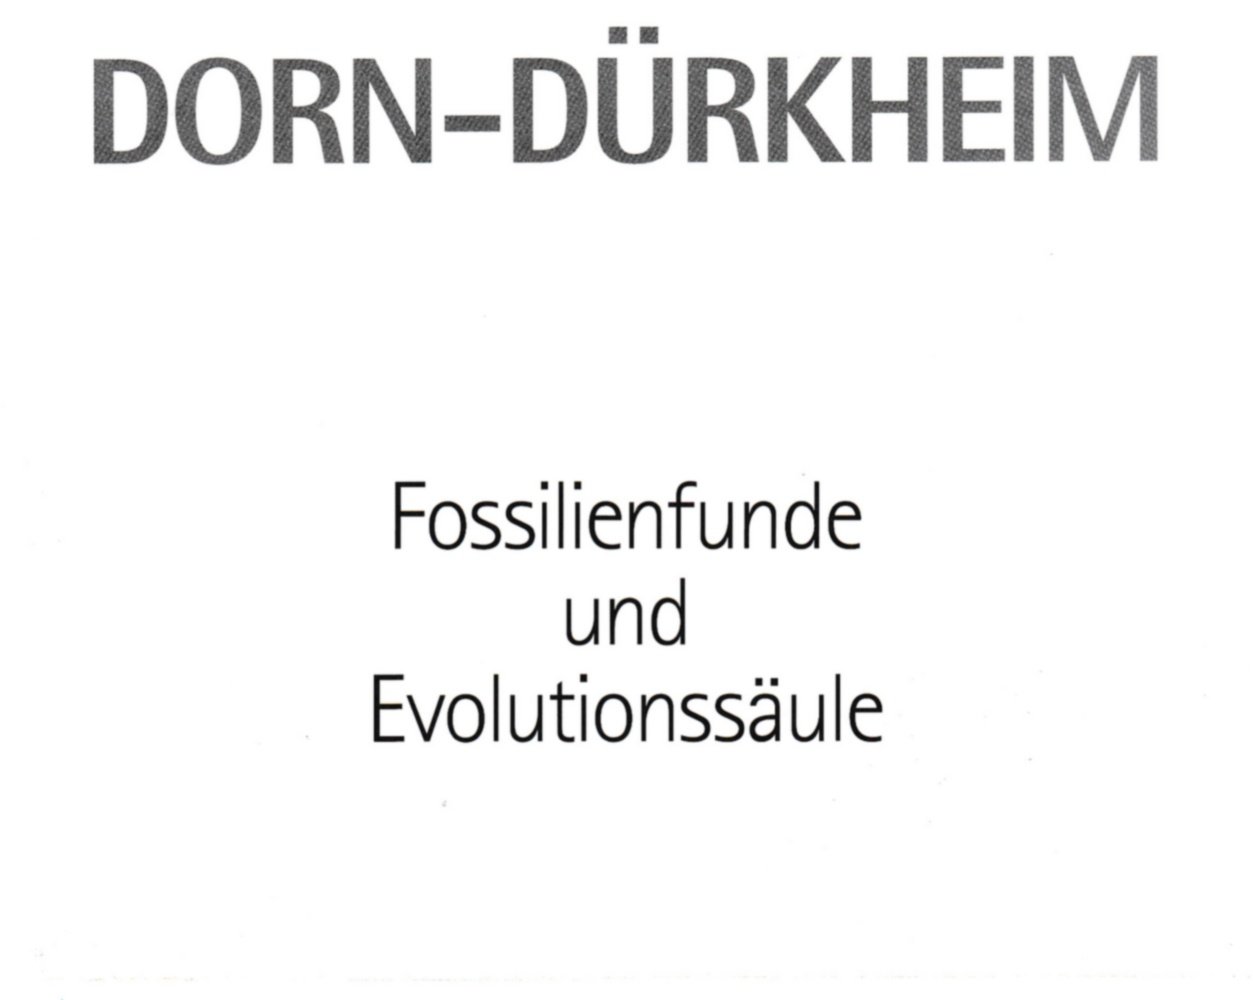 Dorn-Dürkheim Fossilienfunde und Evolutionssäule (Kulturverein Guntersblum CC BY-NC-SA)